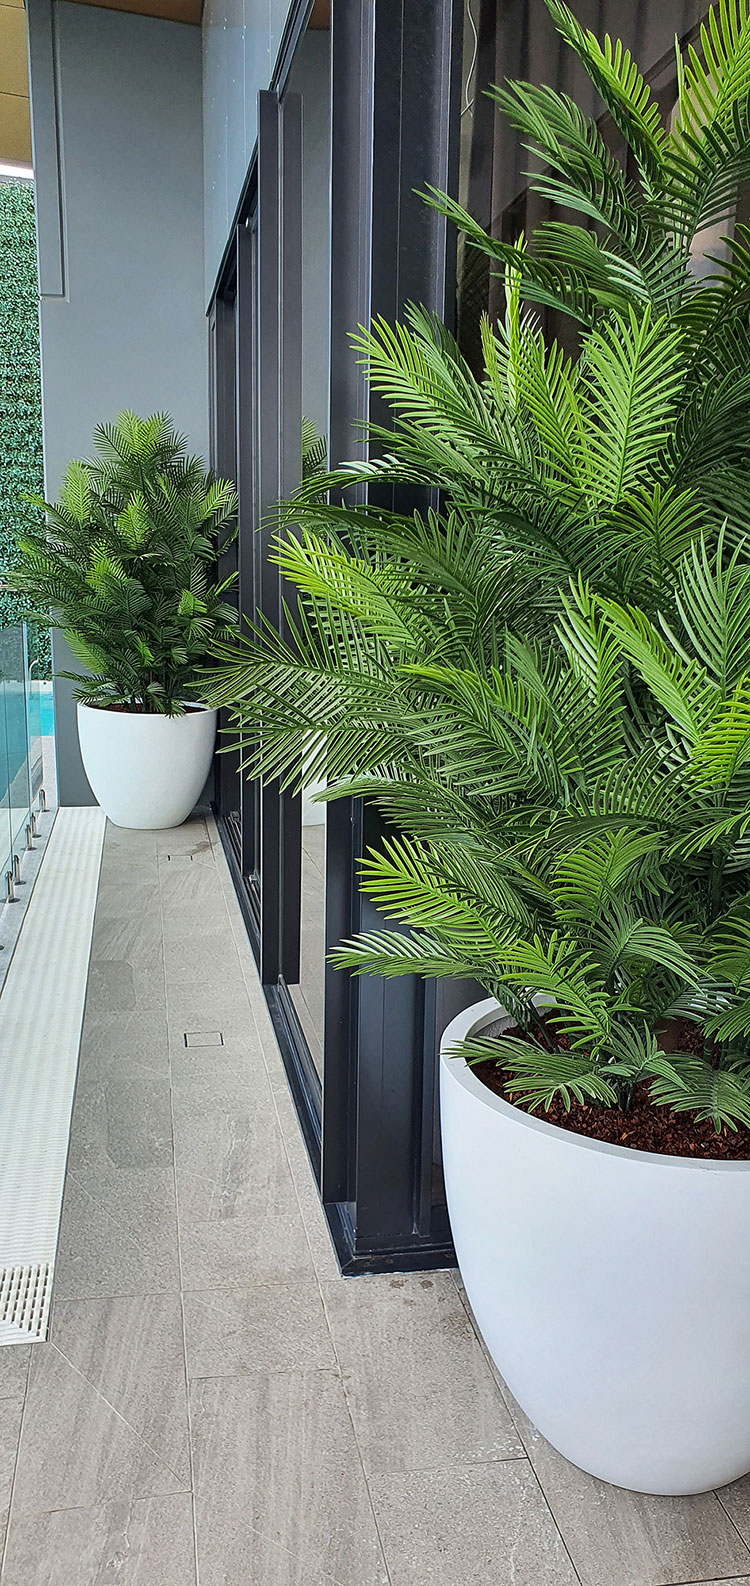 Large, lush UV-treated Palms for penthouse balcony image 11